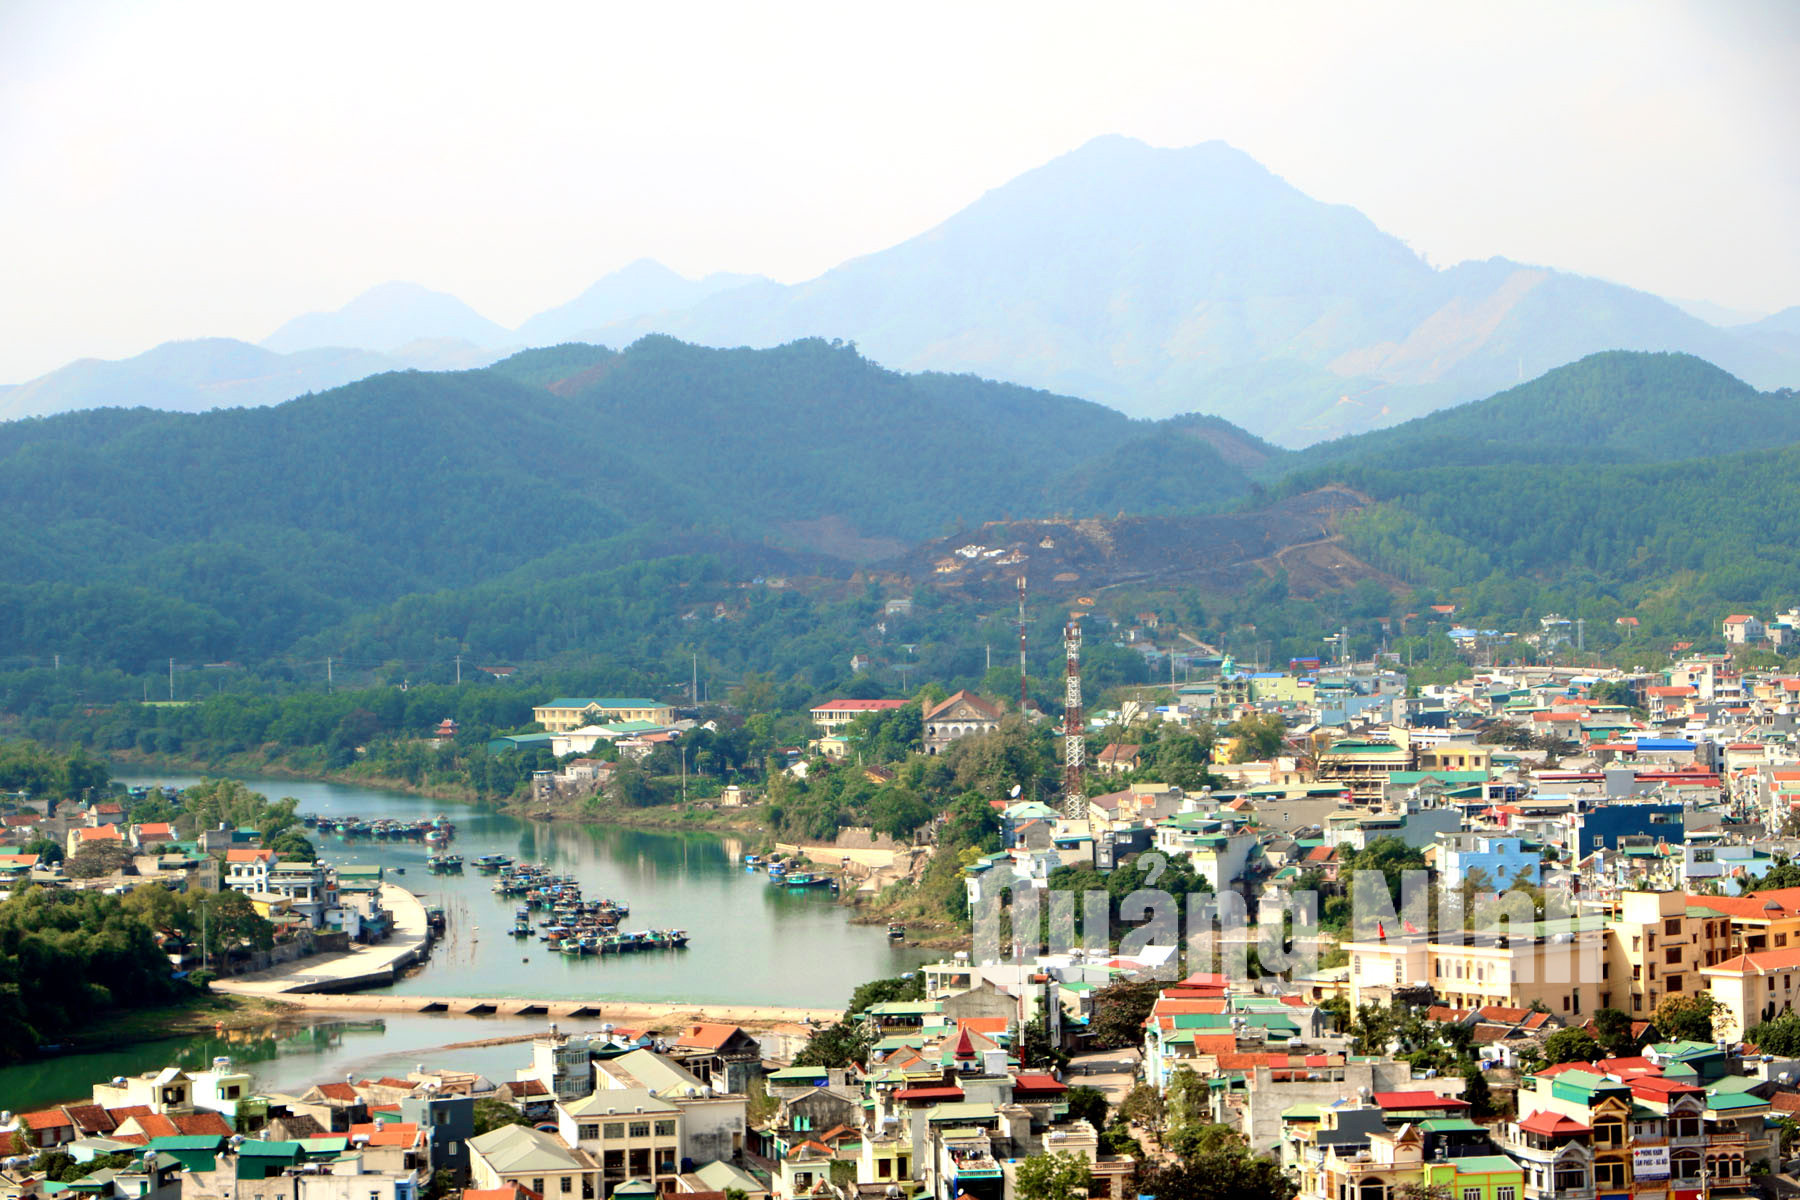 Thị trấn Tiên Yên đang trên đà phát triển, phấn đấu trở thành đô thị loại 4 vào năm 2018. Ảnh: Thanh Sơn